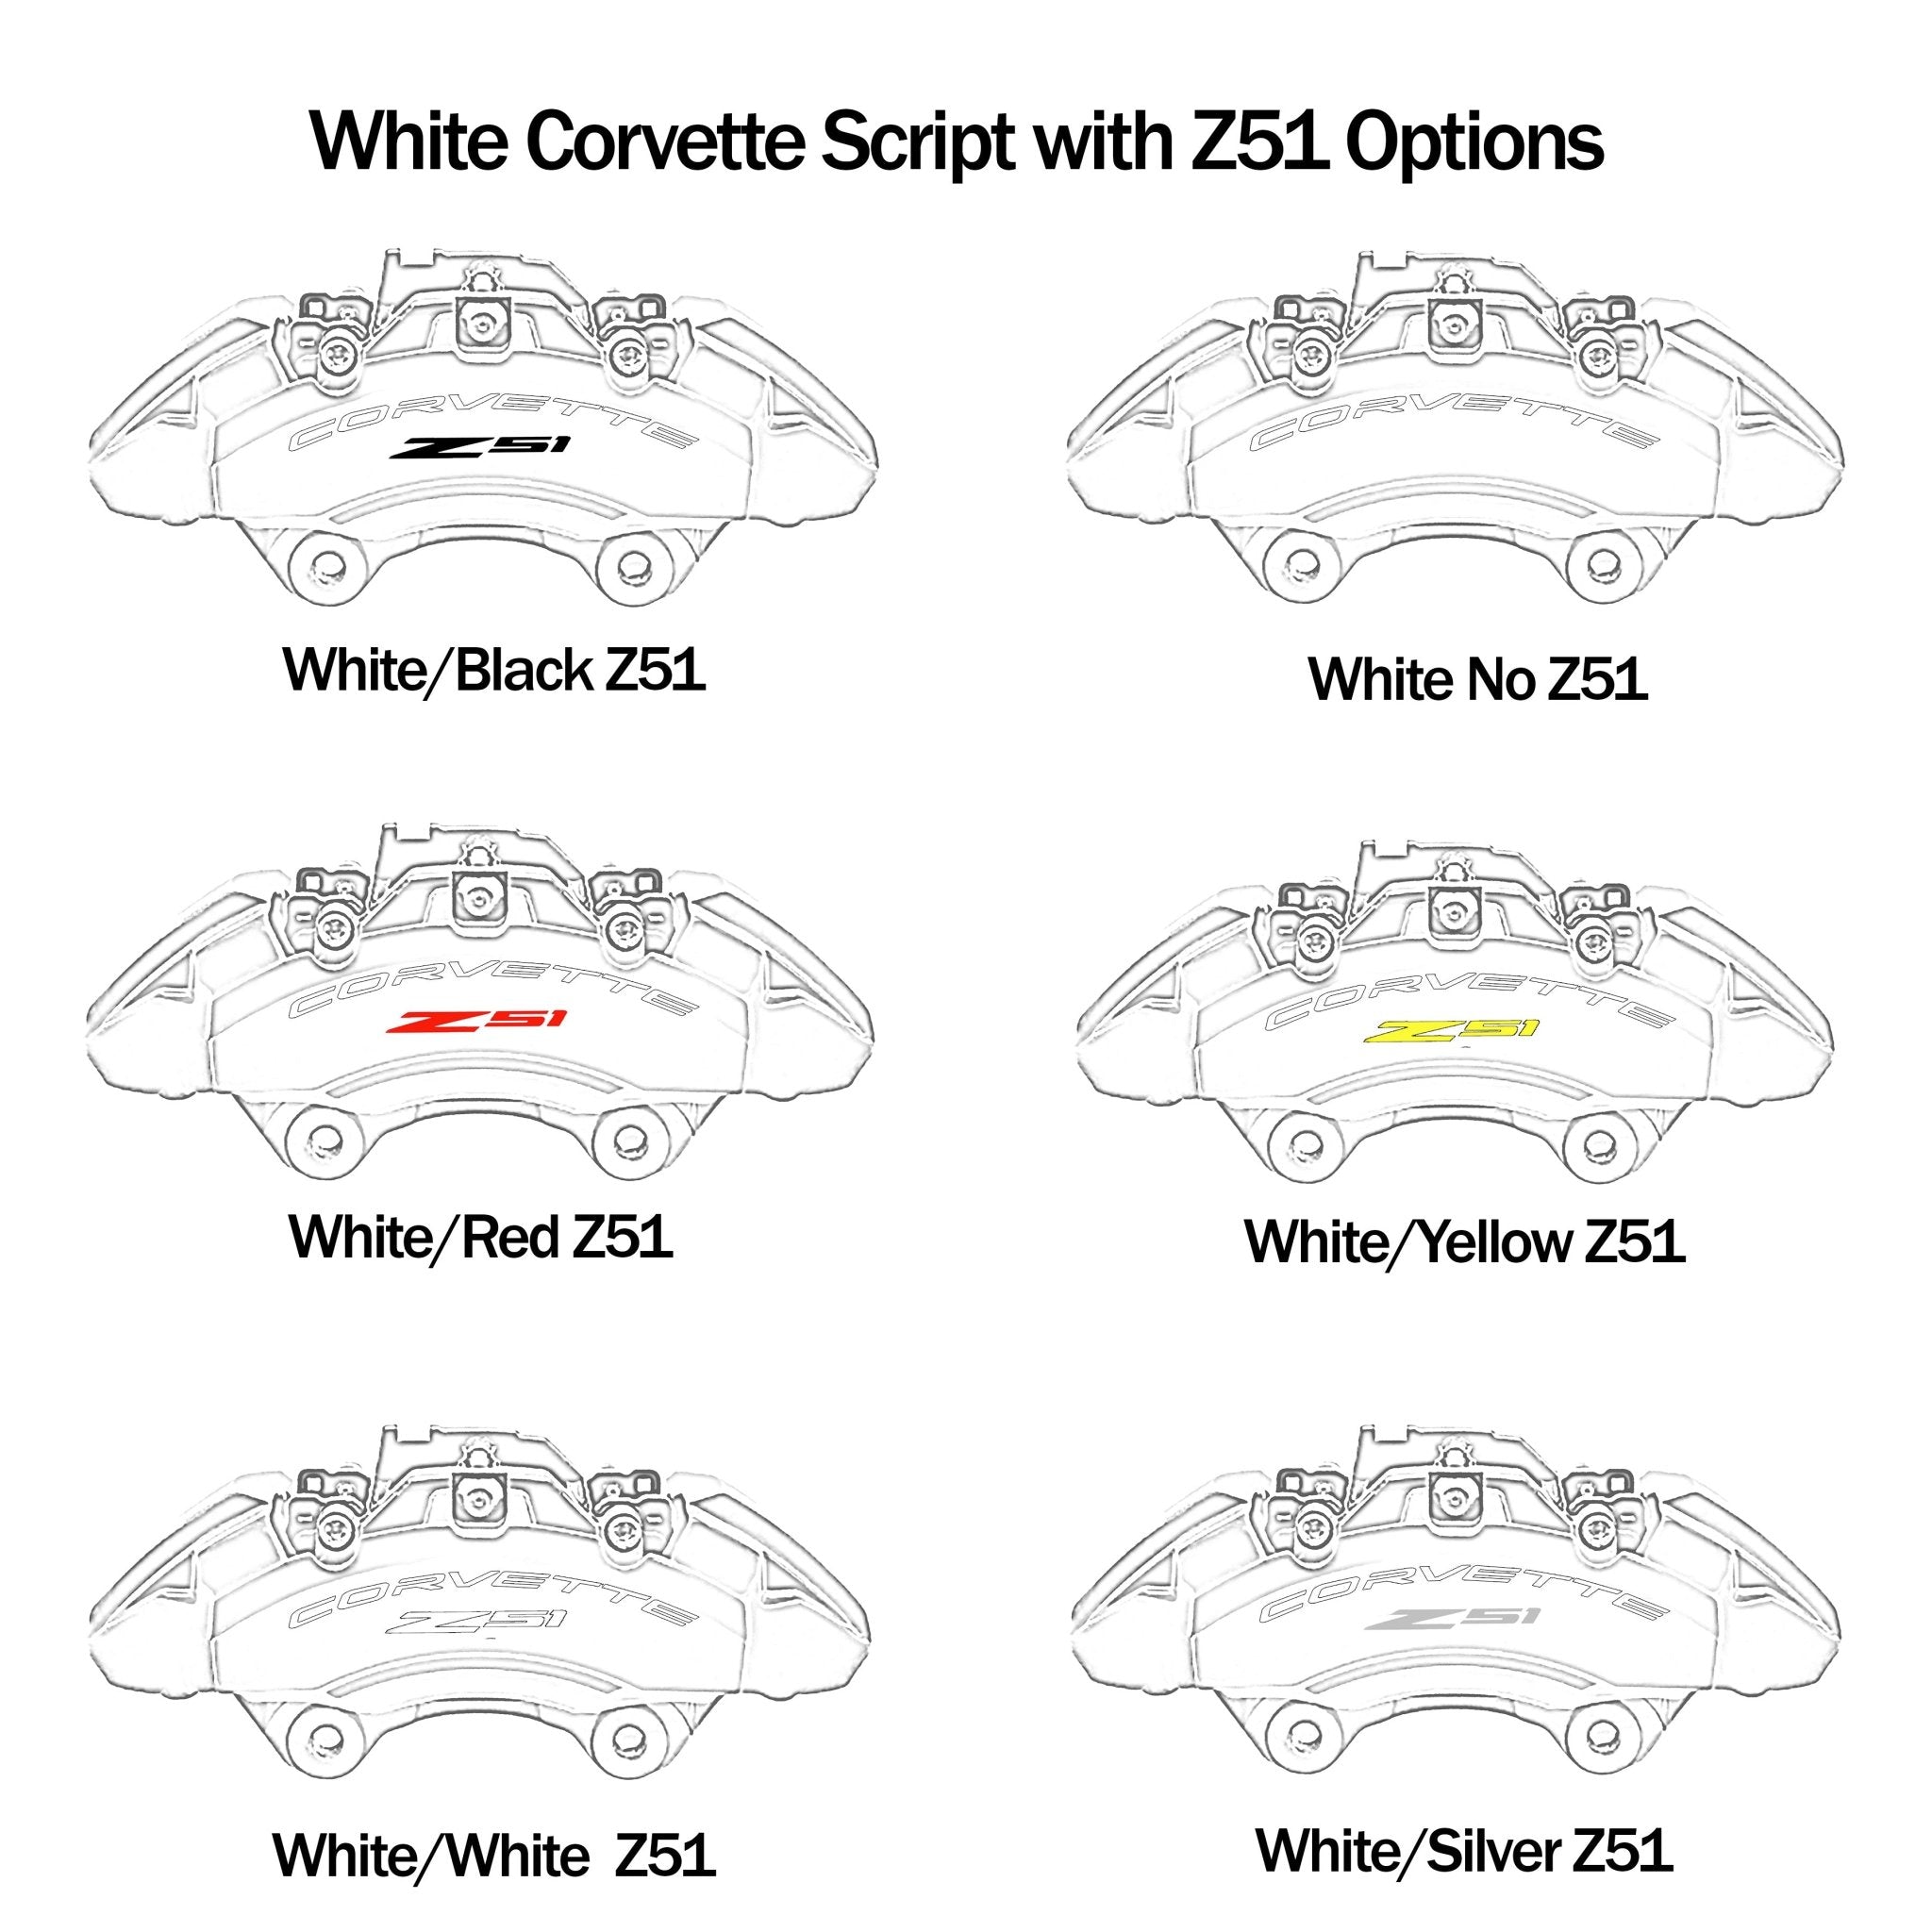 Corvette C7 Brake Caliper Decals - High Temperature - Vette1 - Caliper Decals